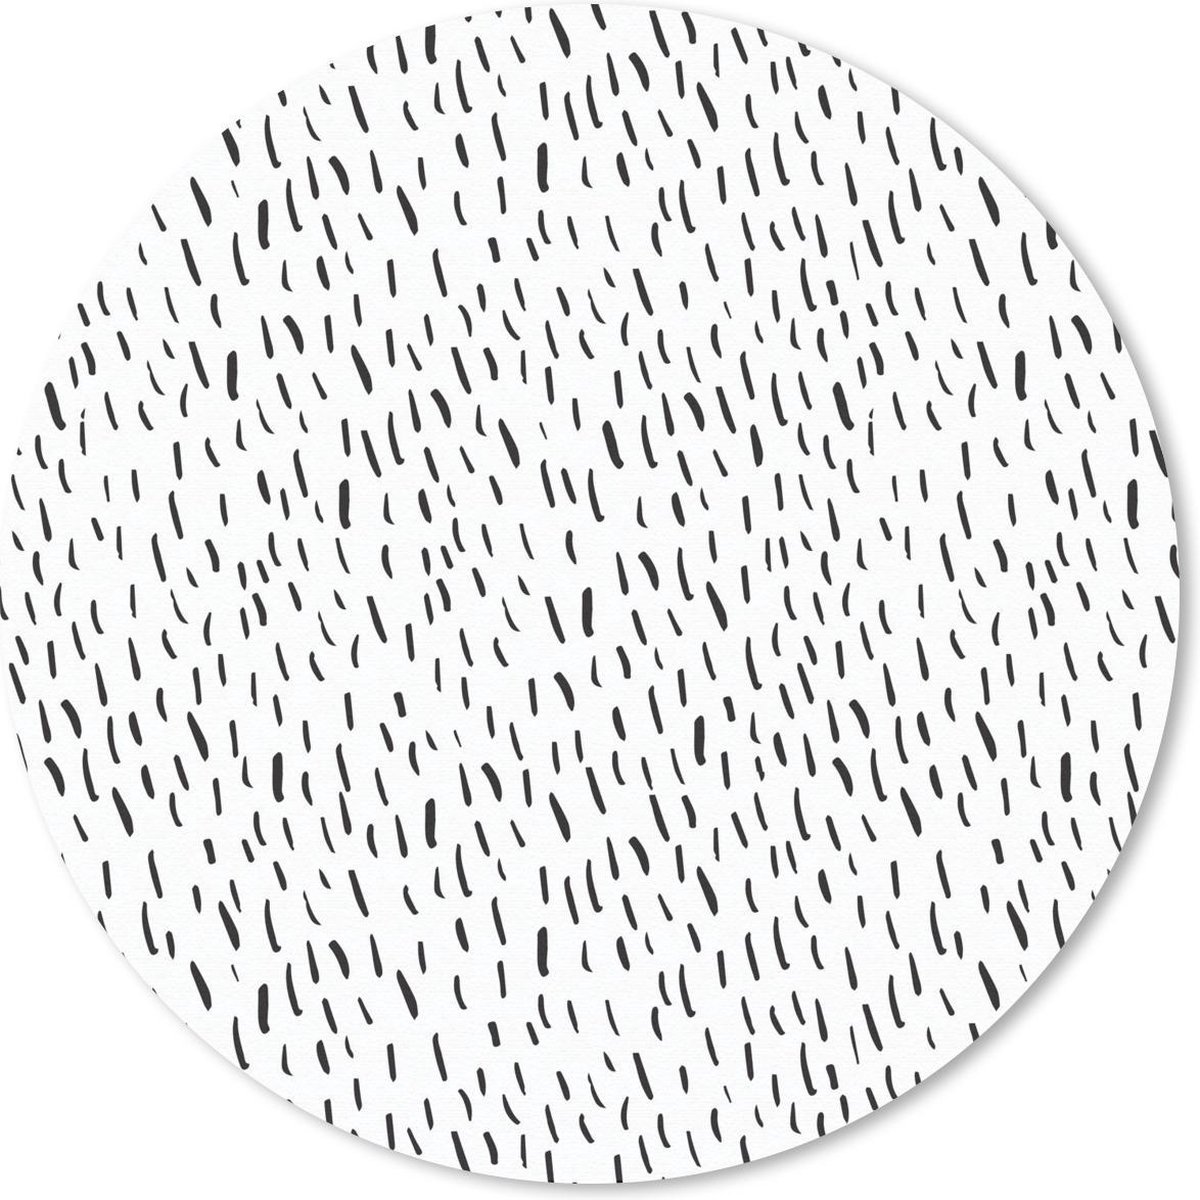 Muismat - Mousepad - Rond - Regen - Zomer - Patroon - 40x40 cm - Ronde muismat